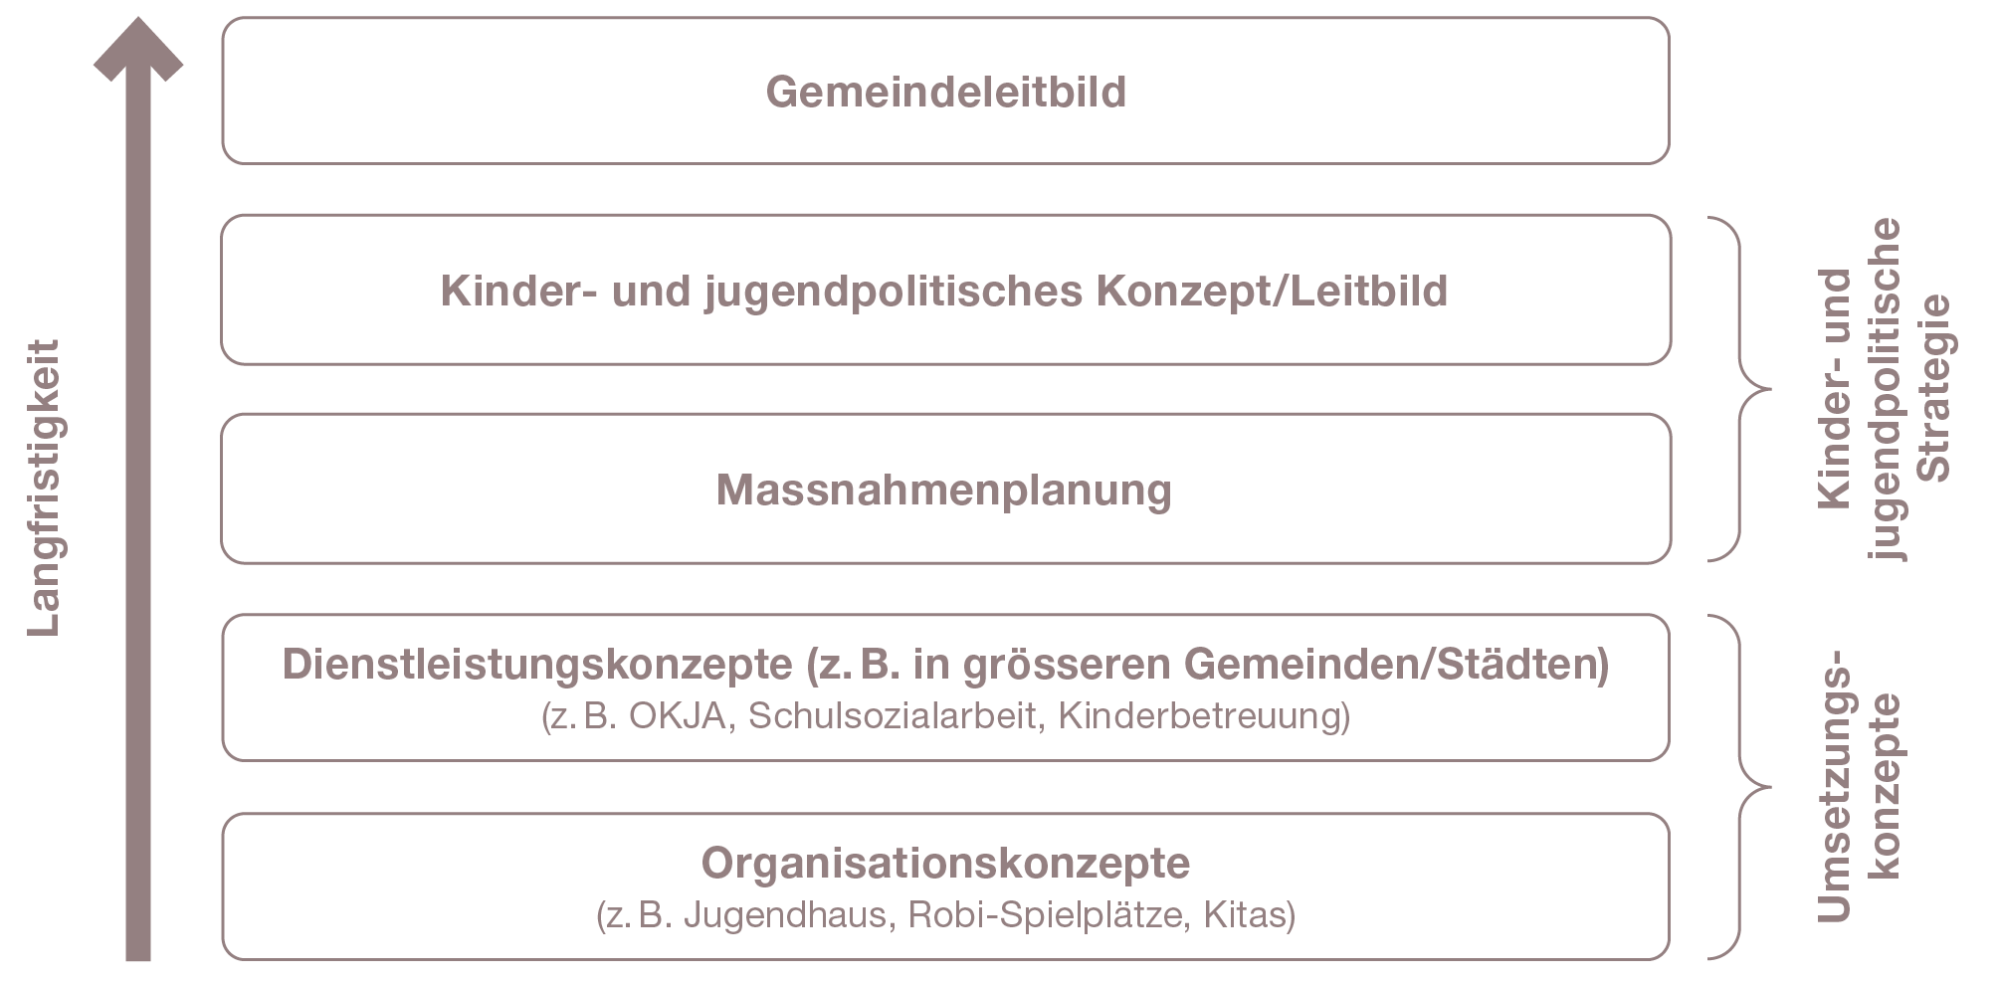 Abbildung 3: Verortung des kinder- und jugendpolitischen Konzepts in der Gemeinde (eigene Darstellung in Anlehnung an Amt für Soziales des Kantons St. Gallen 2013: 9)